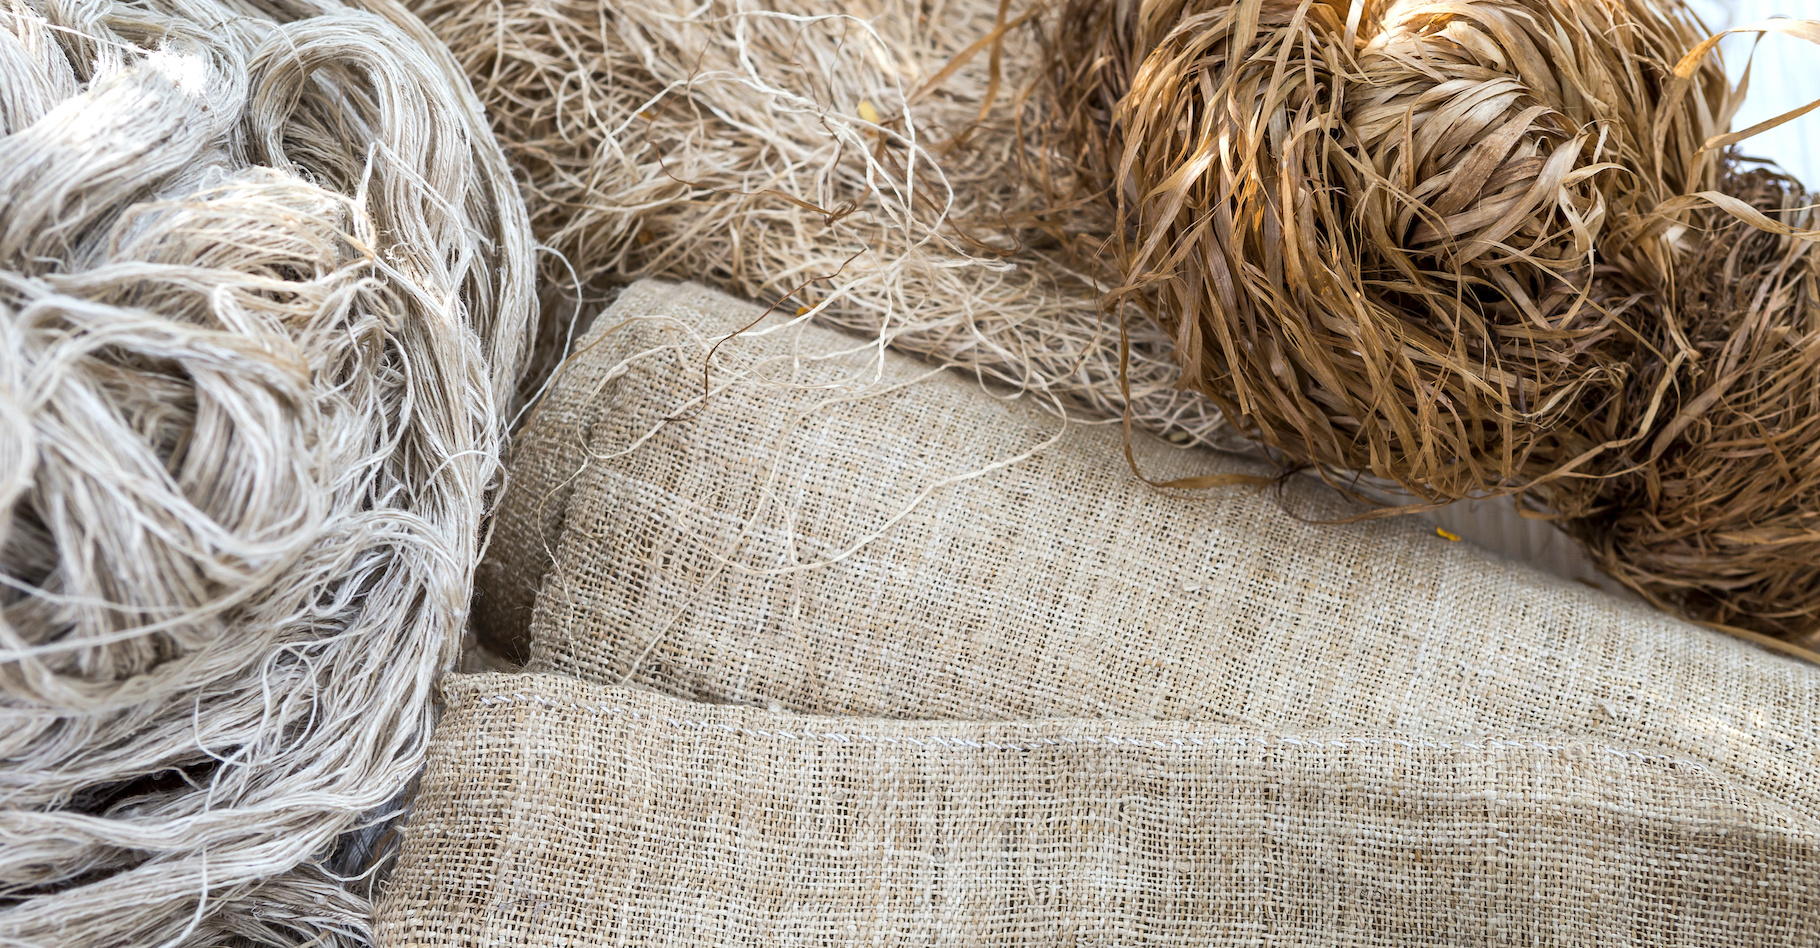 Les fibres végétales, comme le chanvre, peuvent constituer des alternatives intéressantes pour la fabrication de sacs. © sirirak, Adobe Stock